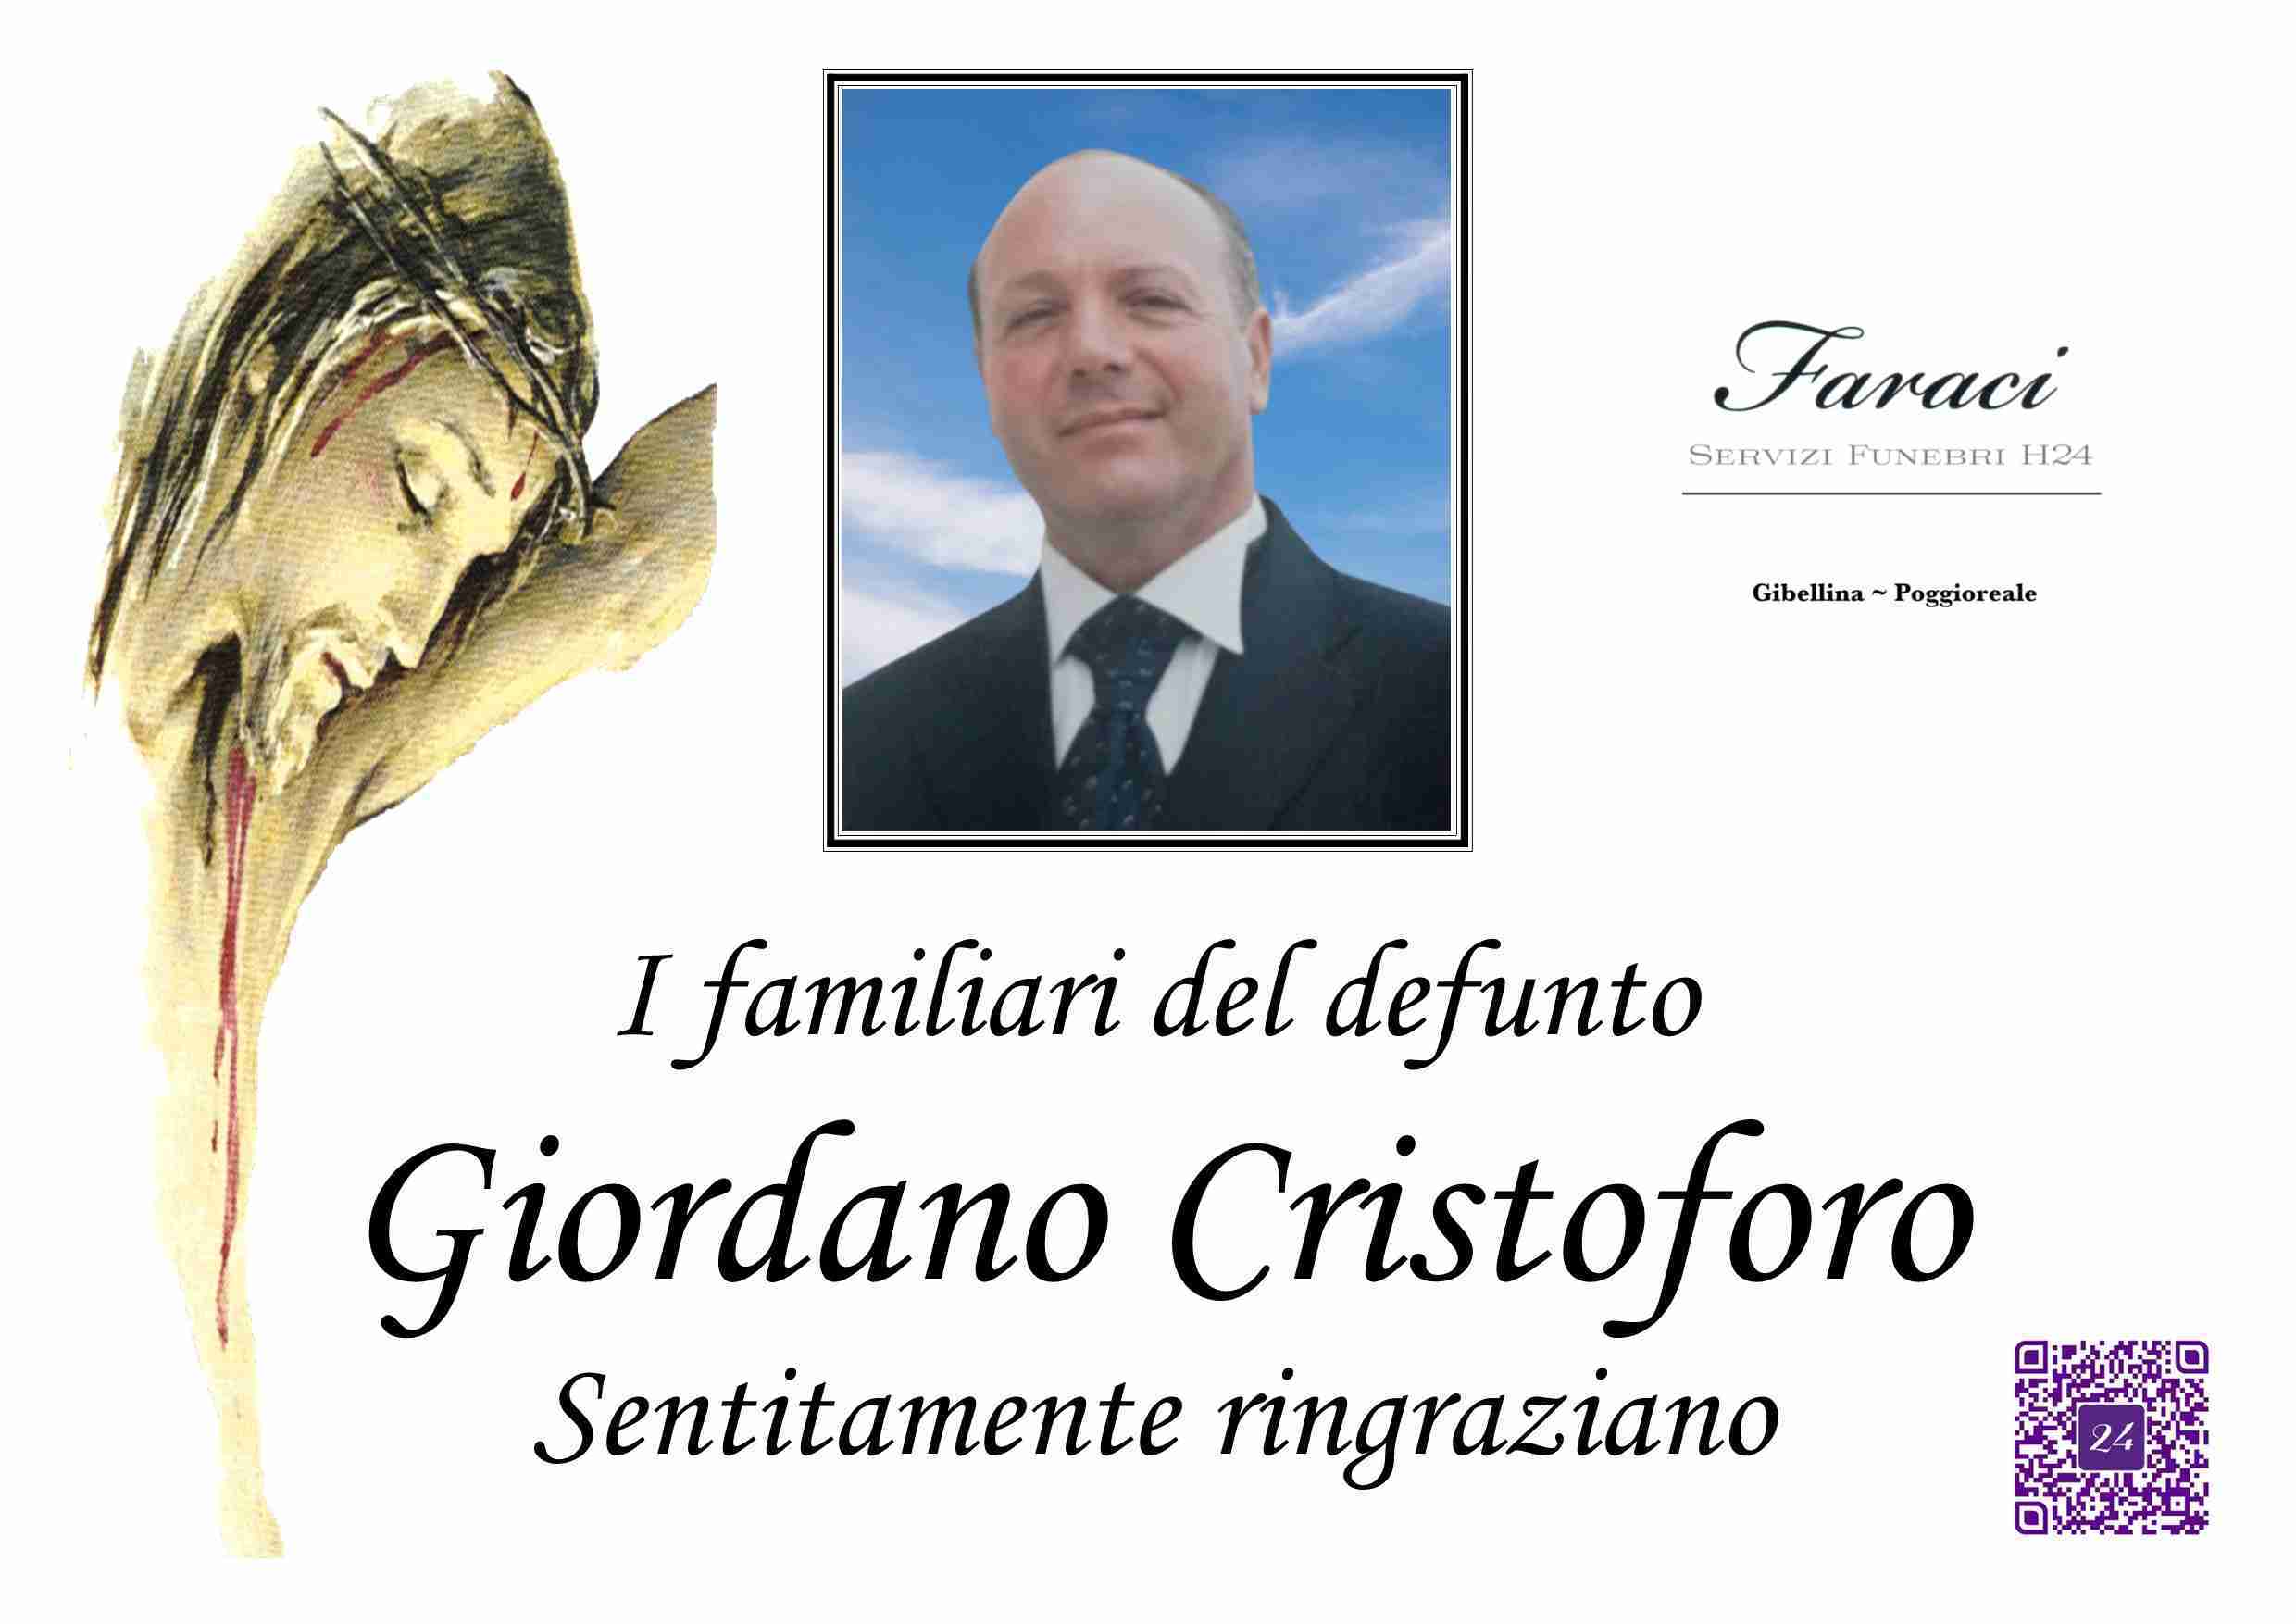 Cristoforo Giordano